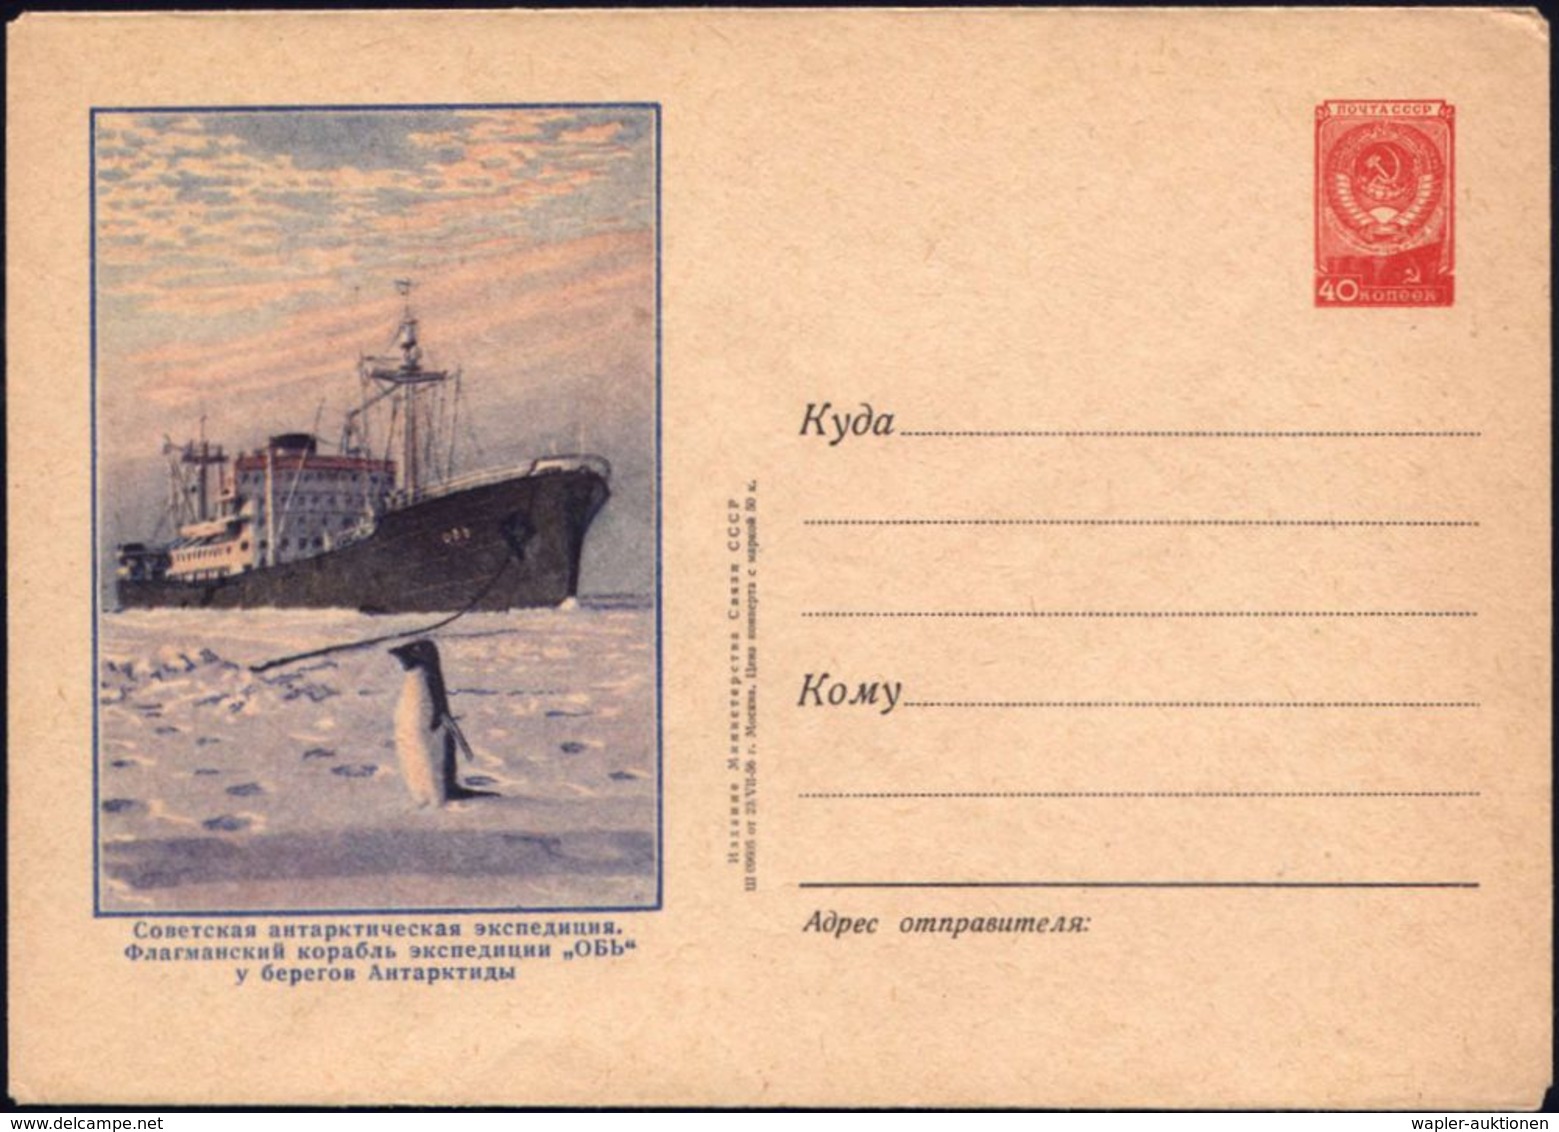 UdSSR 1956 40 Kop. U Staatswappen, Rot: Sowjet. Antarktis-Expedition (= Forschungsschiff, Pinguin) Ungebr. - - Antarktis-Expeditionen